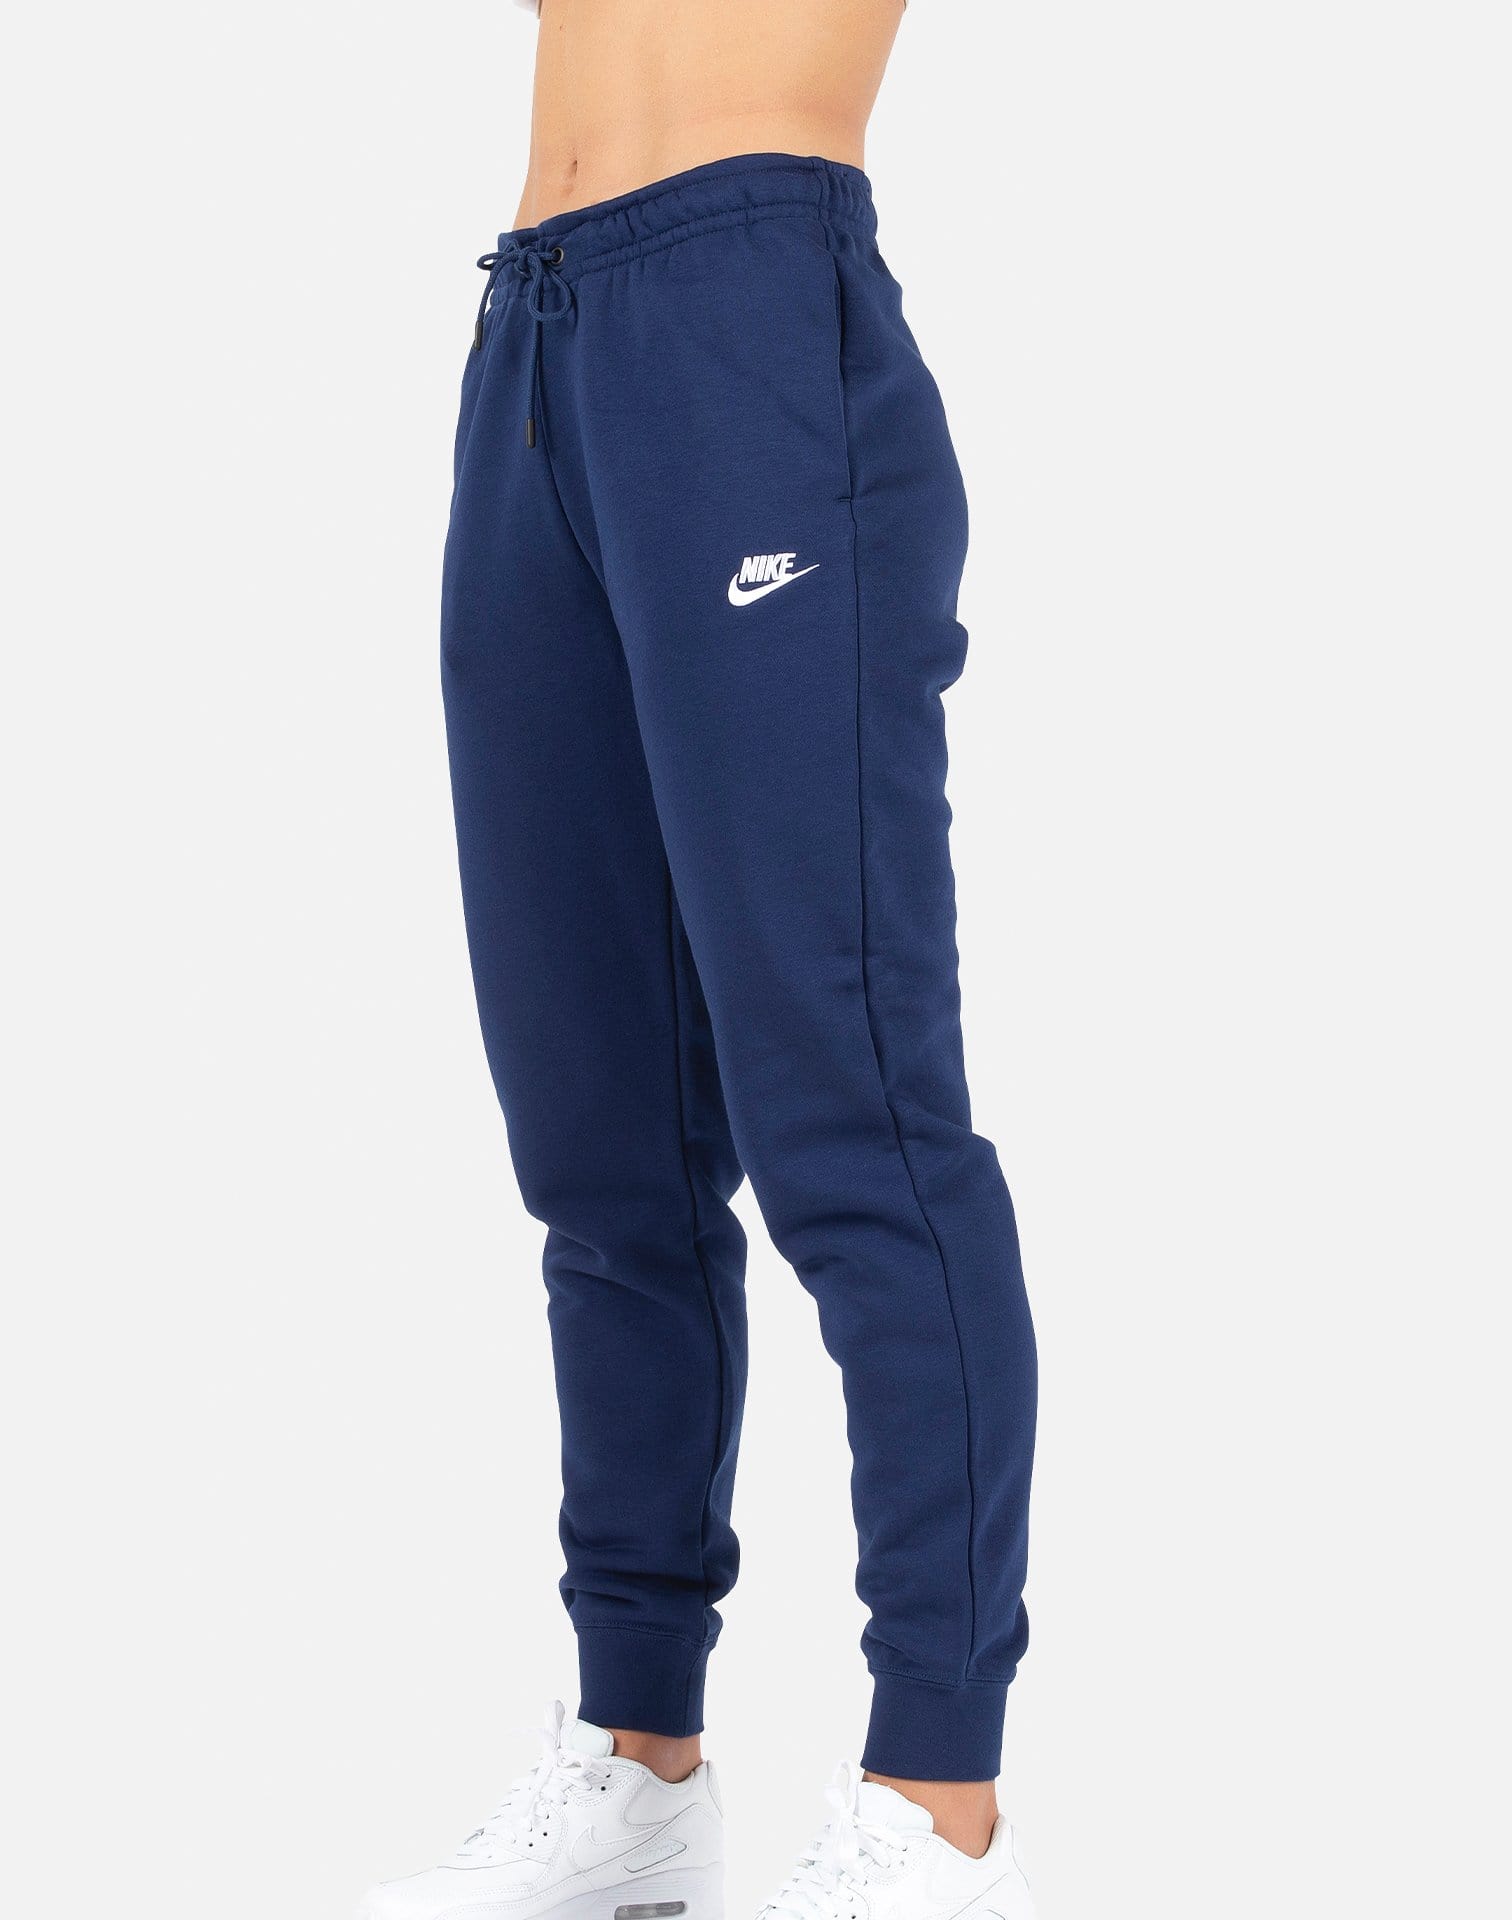 Nike Women's NSW Essential Fleece Pants